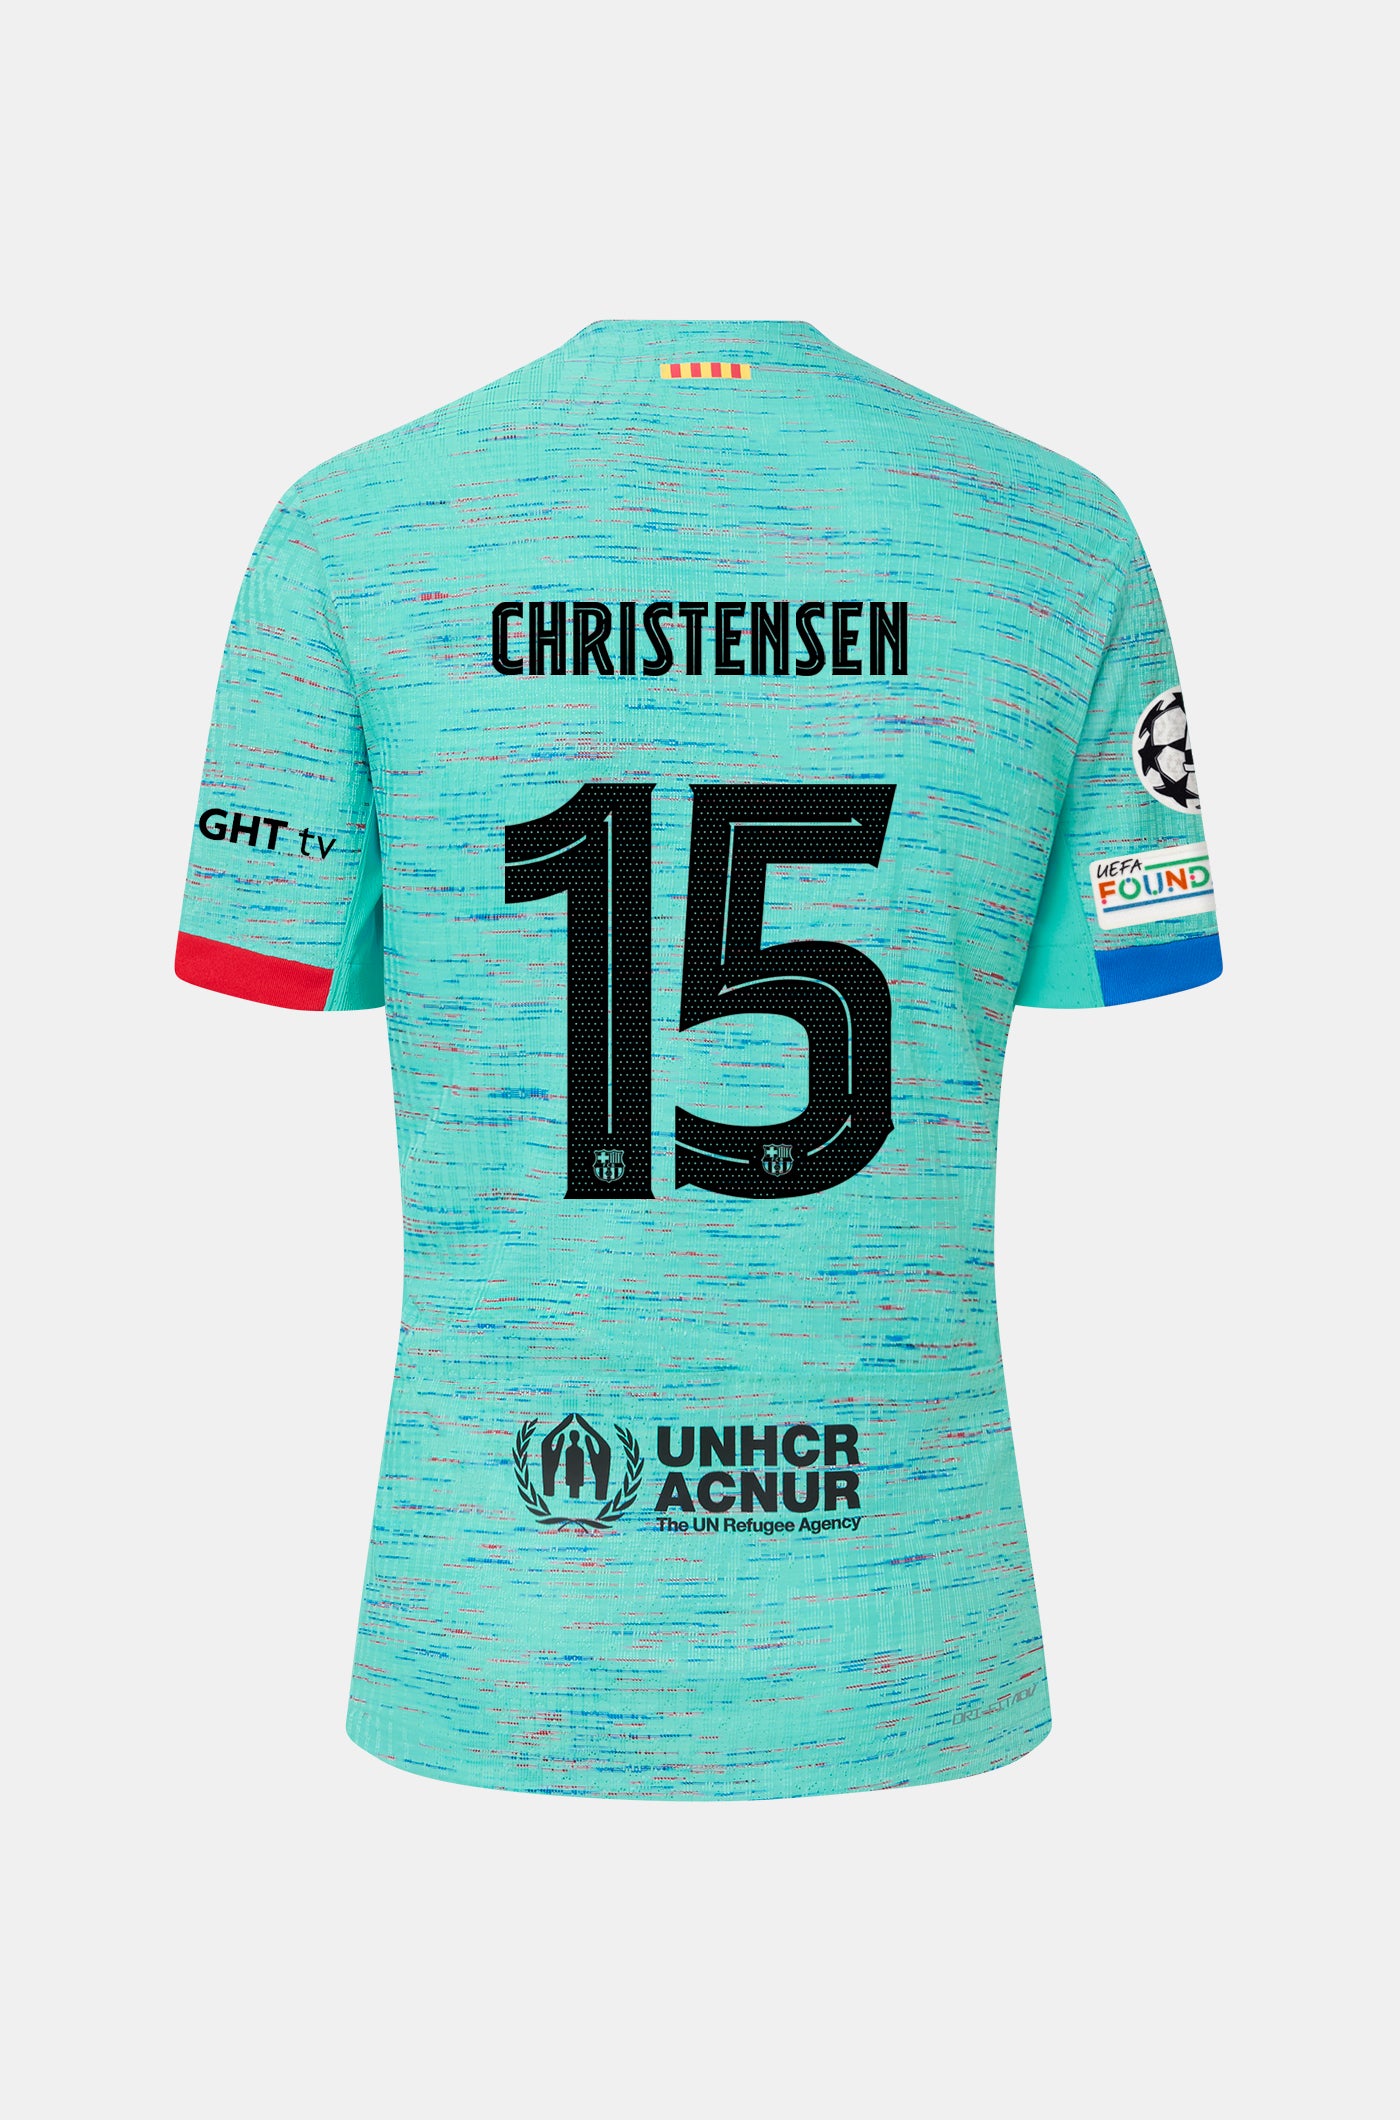 UCL FC Barcelona third shirt 23/24 Player’s Edition - CHRISTENSEN